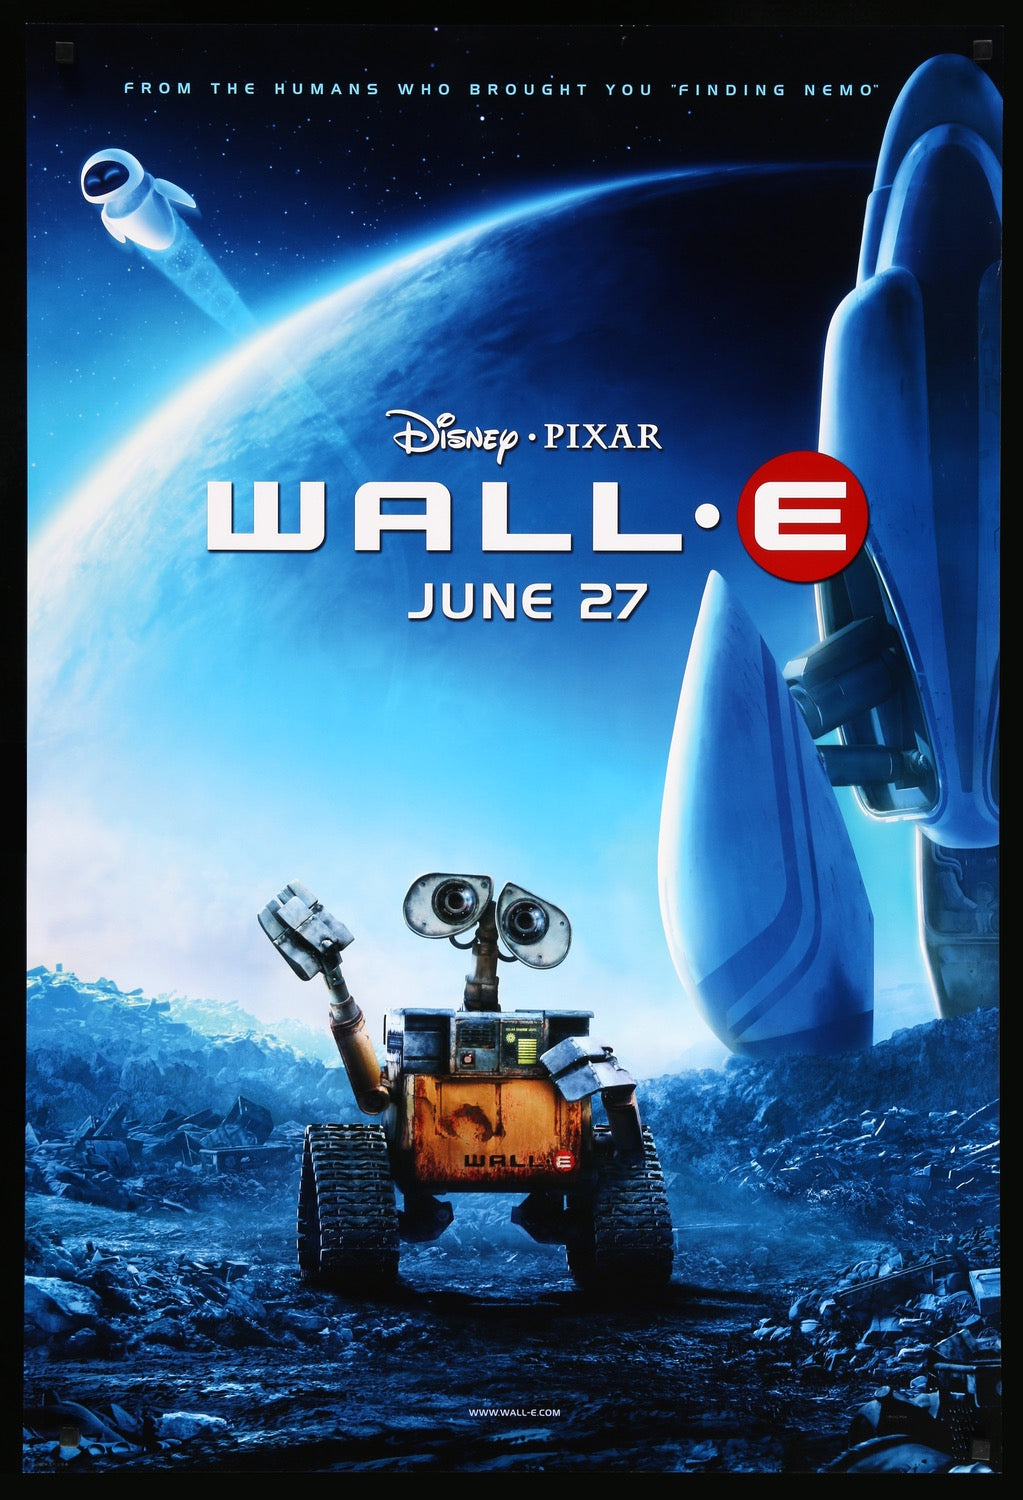 WALL-E (2008) original movie poster for sale at Original Film Art